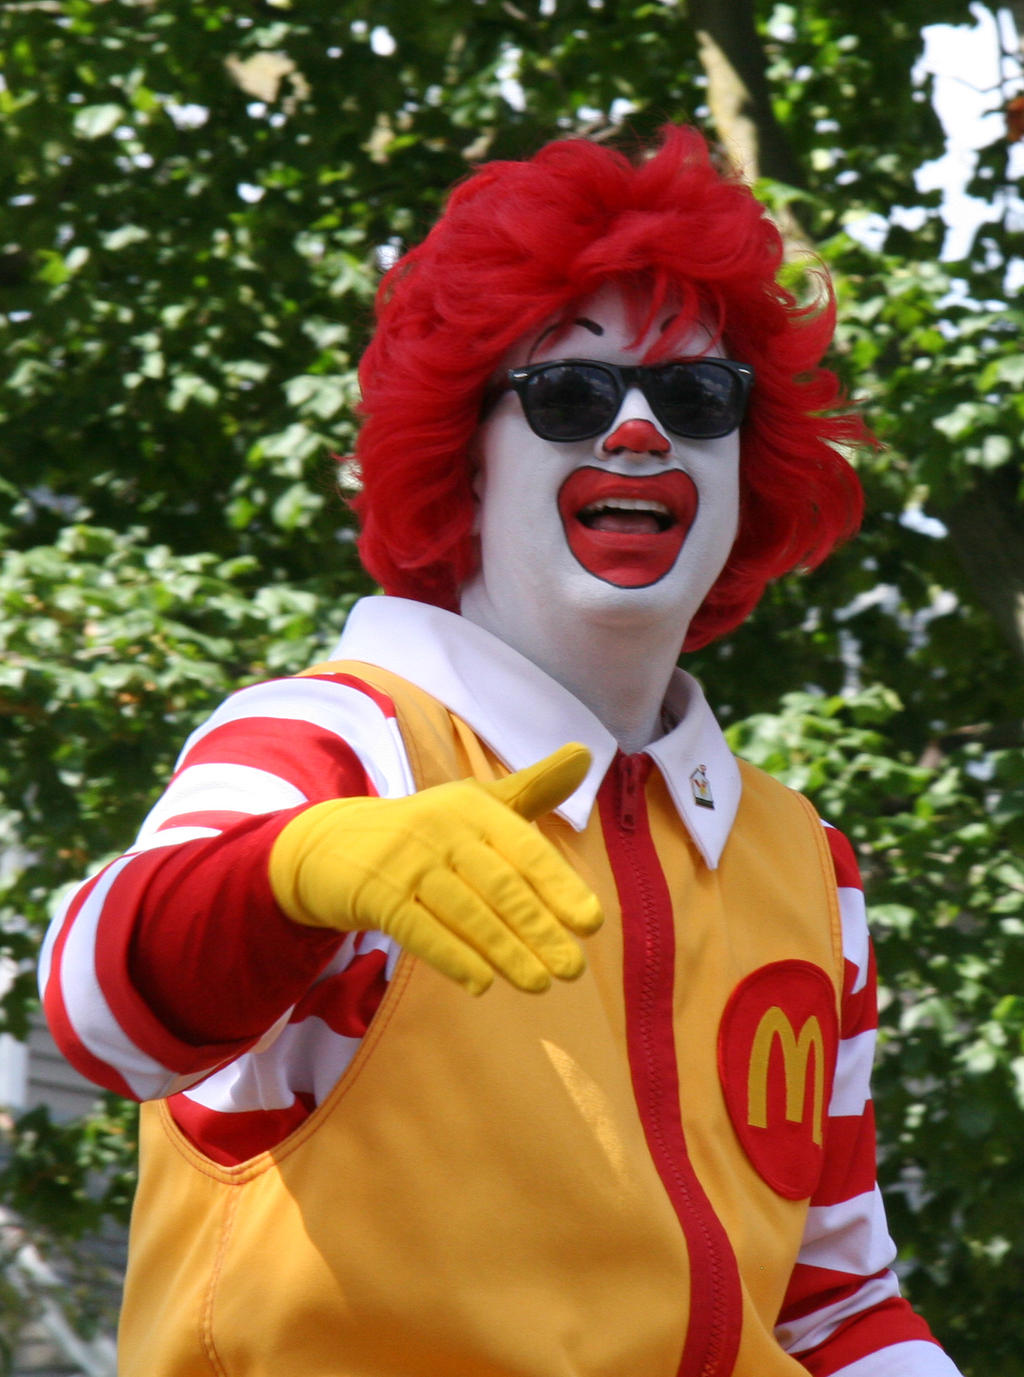 Ronald McDonald is Gangsta